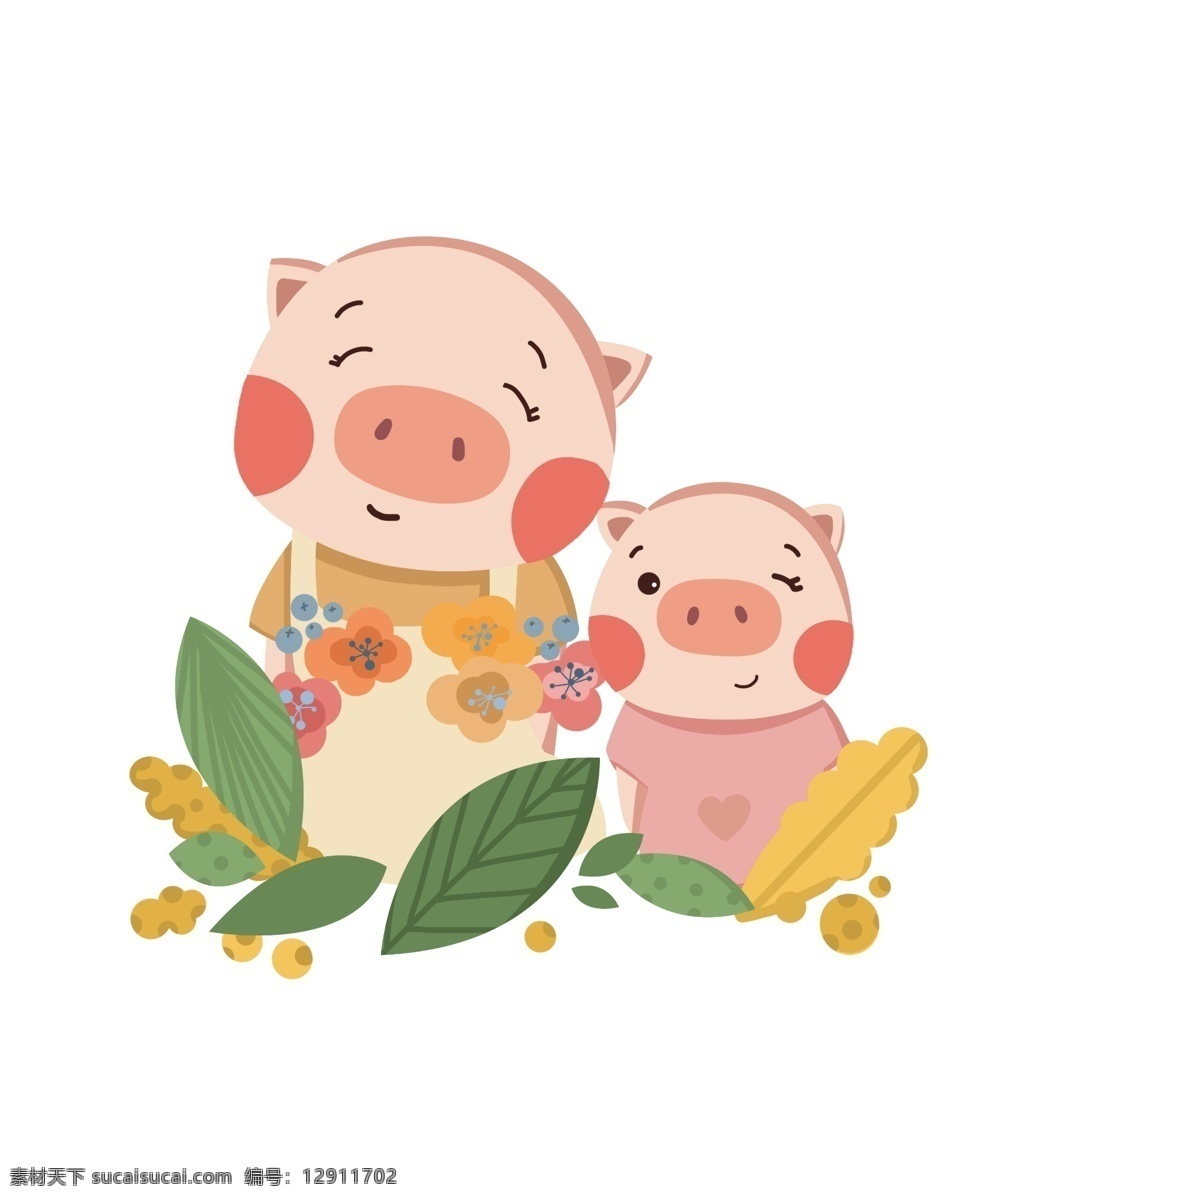 卡通 手绘 猪年 小 猪 妈妈 卡通手绘猪年 可爱小猪 猪妈妈 小猪 猪妈妈与小猪 卡通小猪 卡通可爱小猪